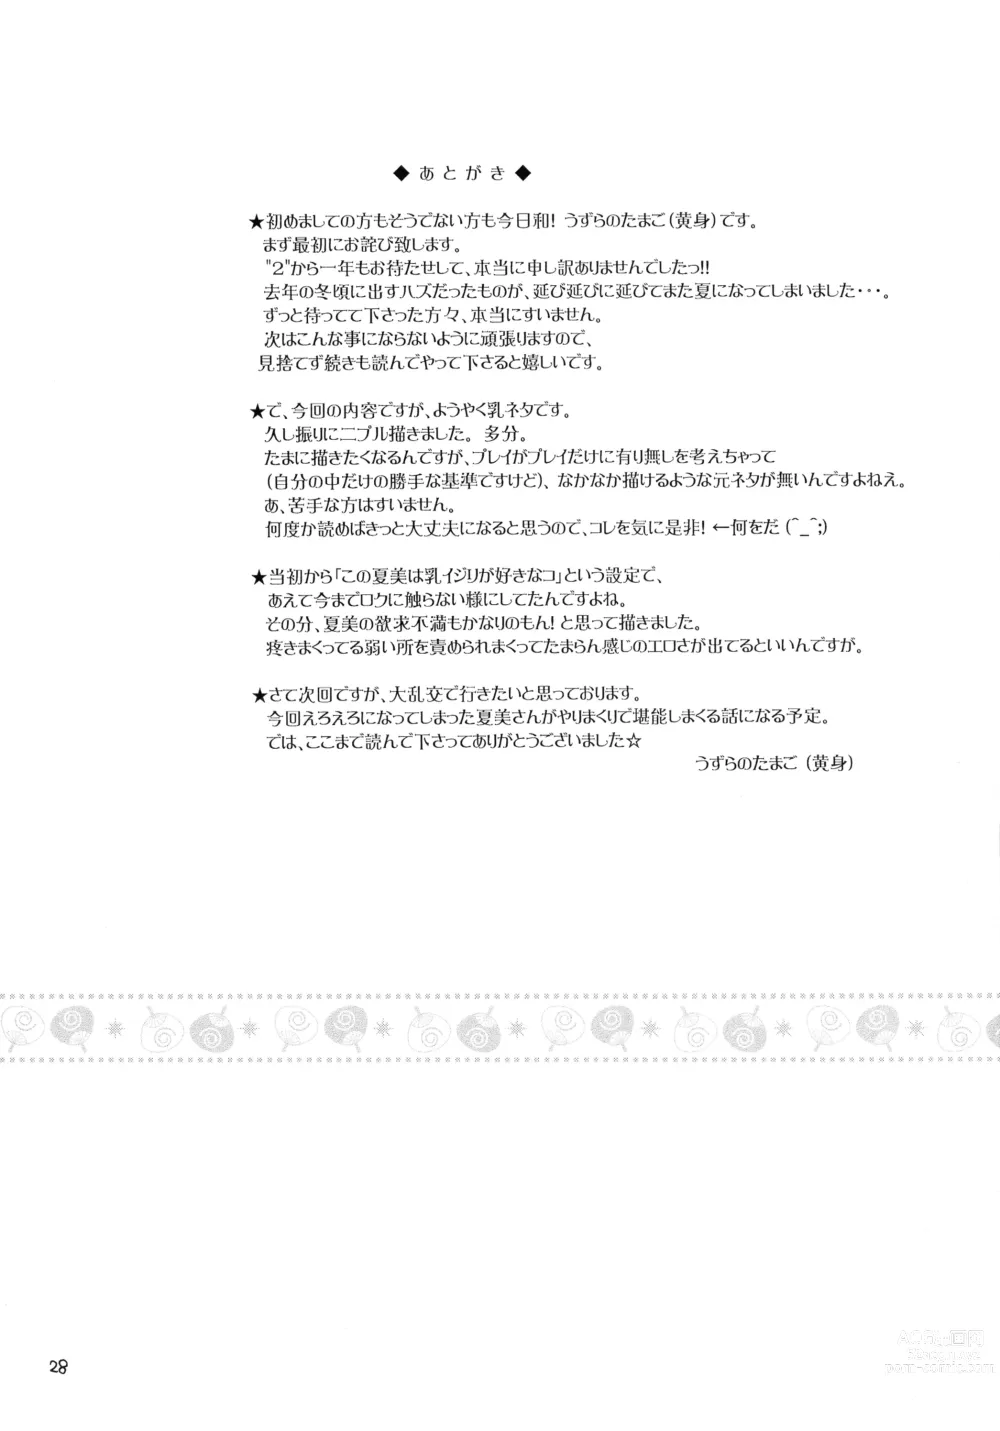 Page 28 of doujinshi Pekopon Bishoujo Shinryakuki 3